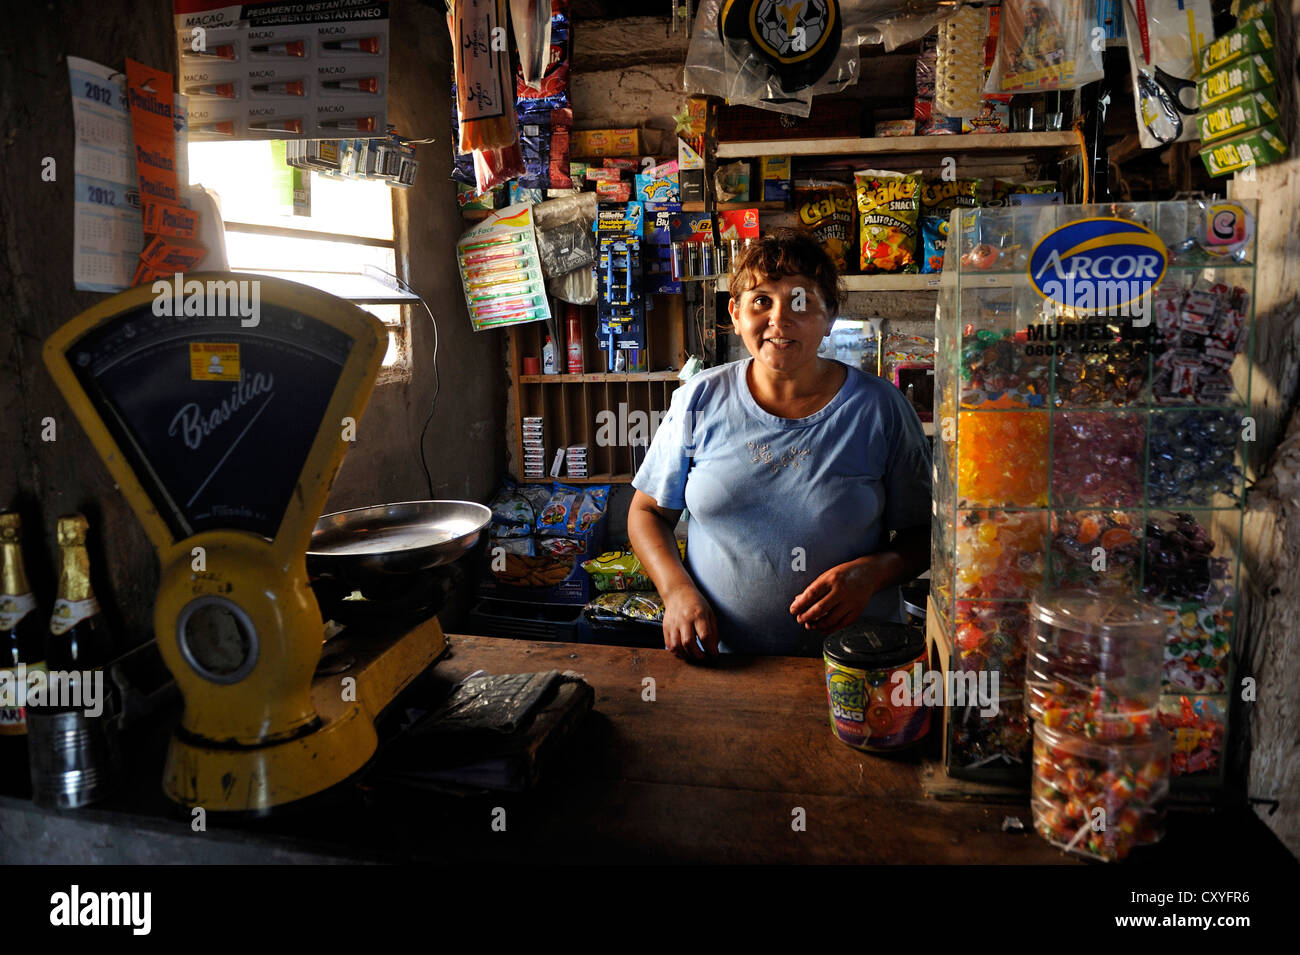 Woman in a small shop, Santiago del Estero province, Argentina, South America Stock Photo